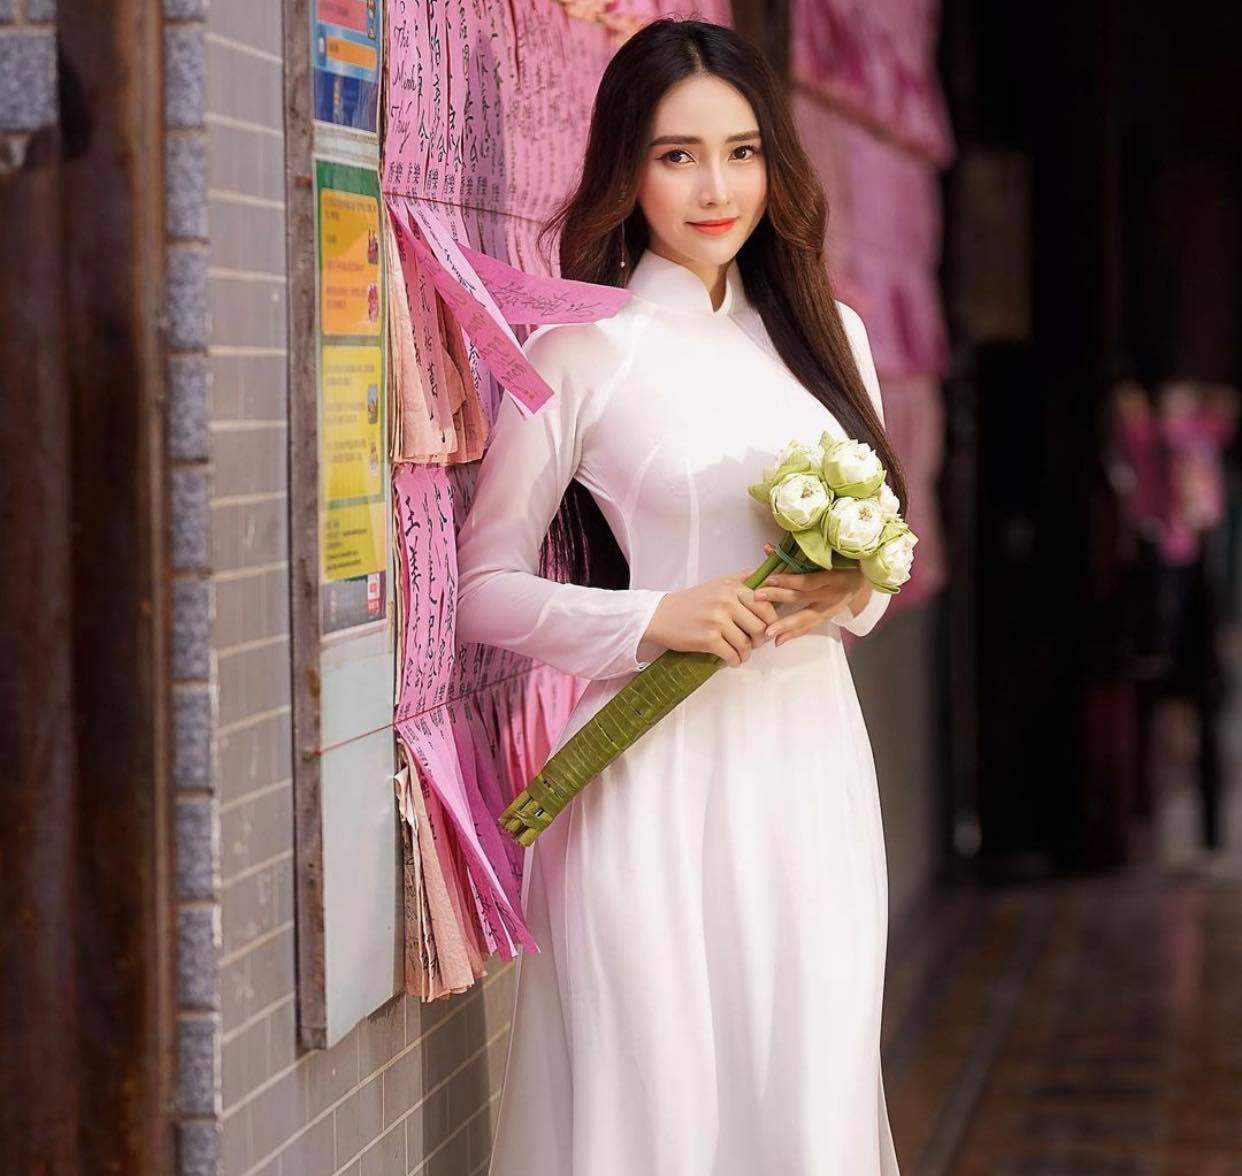 Người đẹp Việt mặc áo dài mỏng tang như tờ giấy đến chốn trang nghiêm gây bức xúc - 6